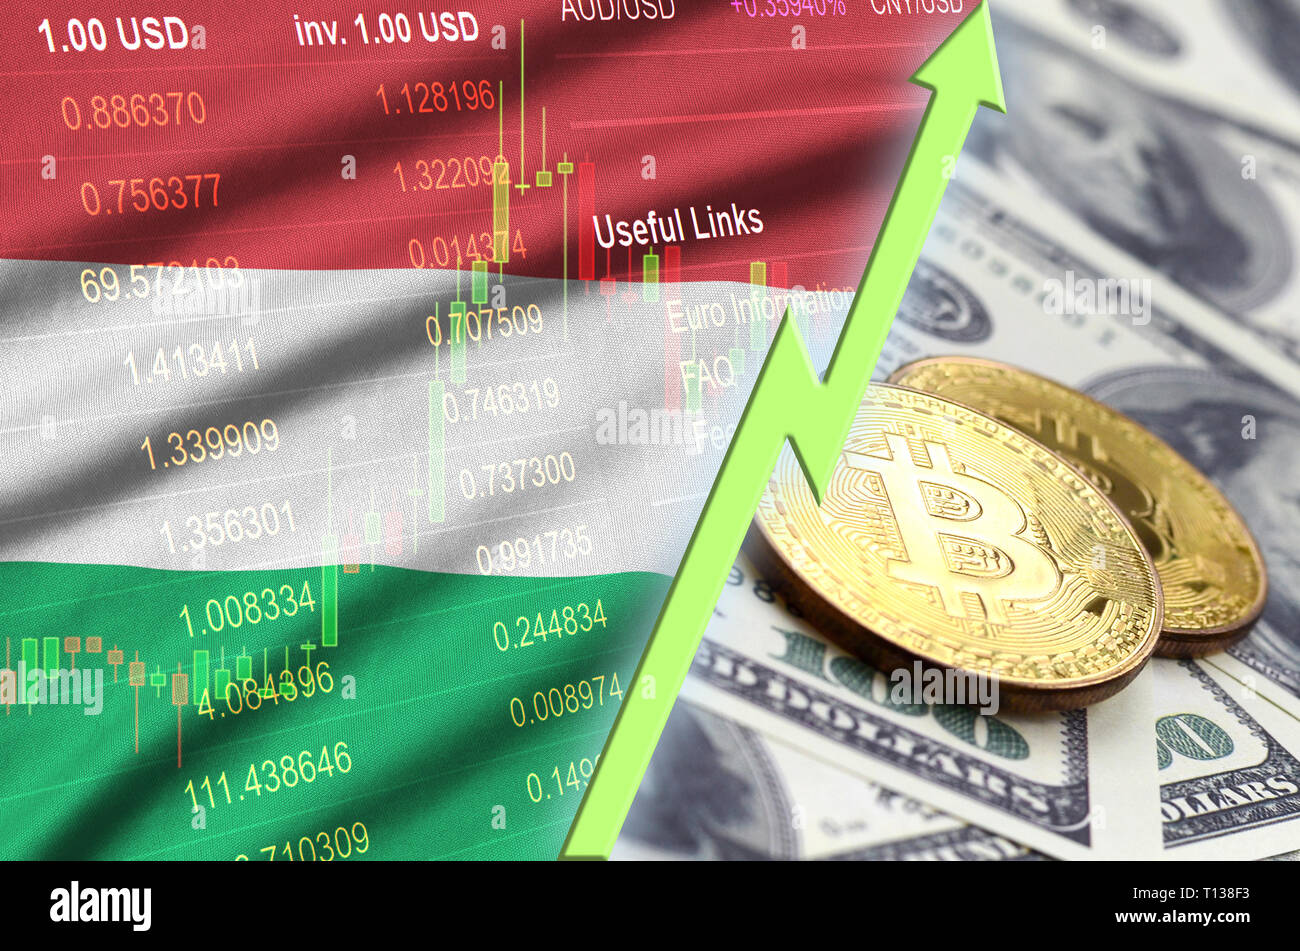 Crypto raiseing over 10 dollars mcdonalds bitcoin